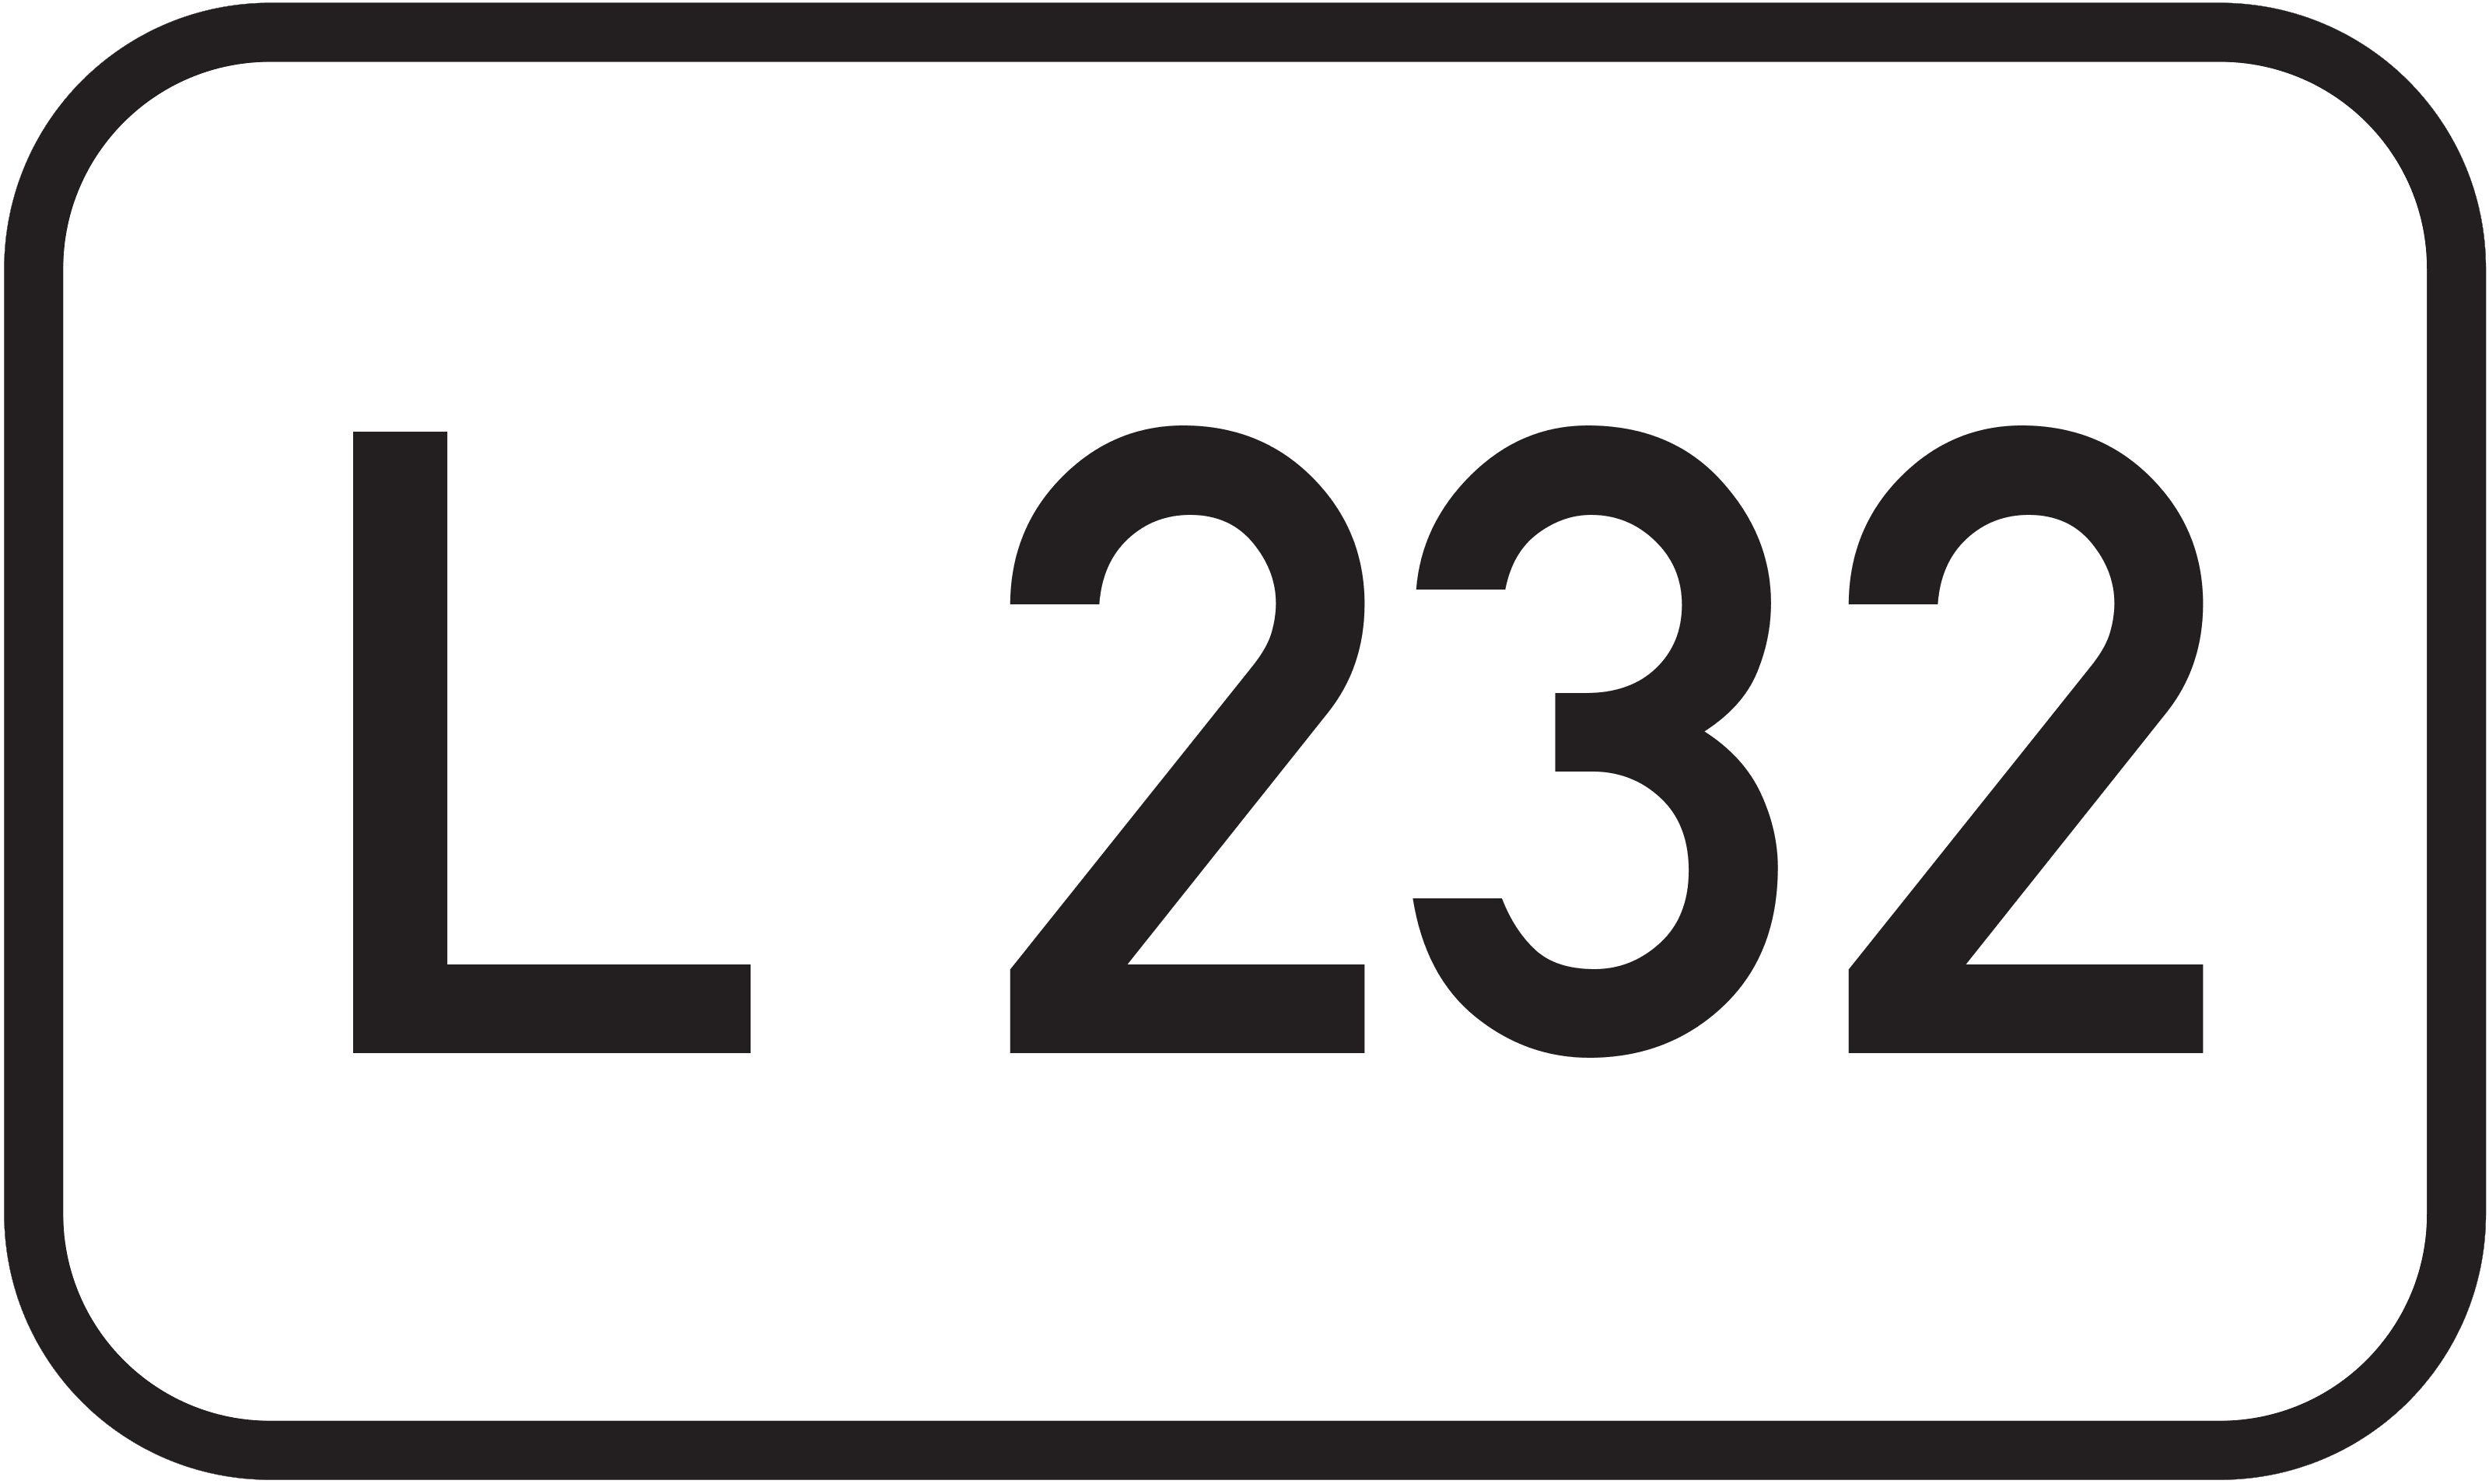 Landesstraße L 232